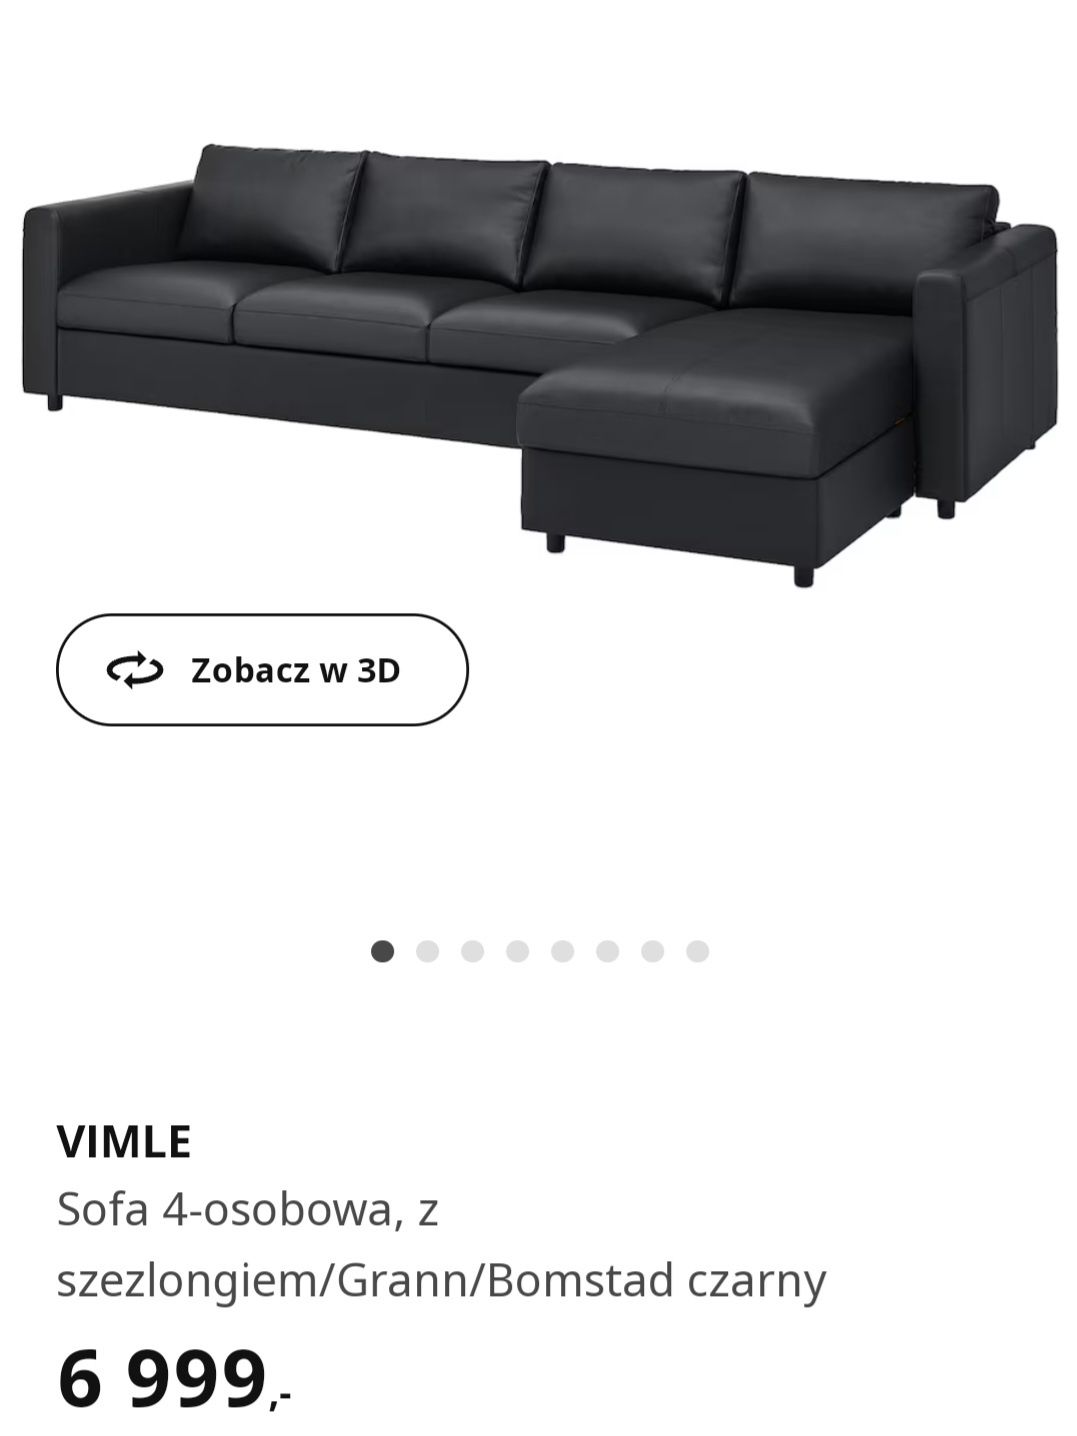 Nowy 1/2 ceny SKÓRA luksusowy narożnik, sofa 4 os. VIMLE z Ikea